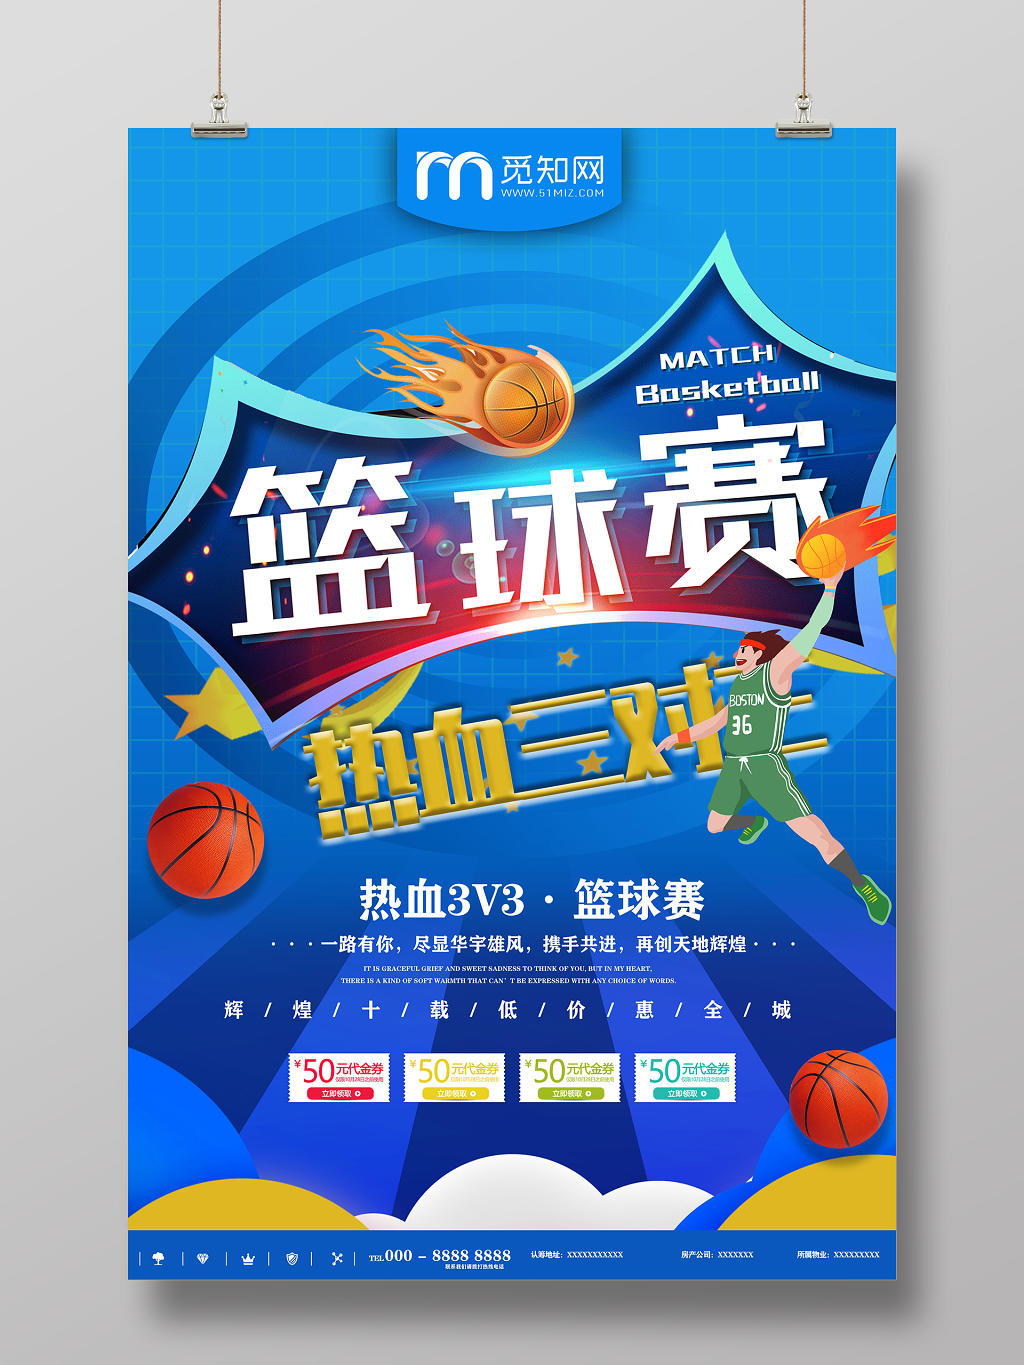 蓝色卡通篮球赛热血三VS三激情开赛青春体育宣传海报